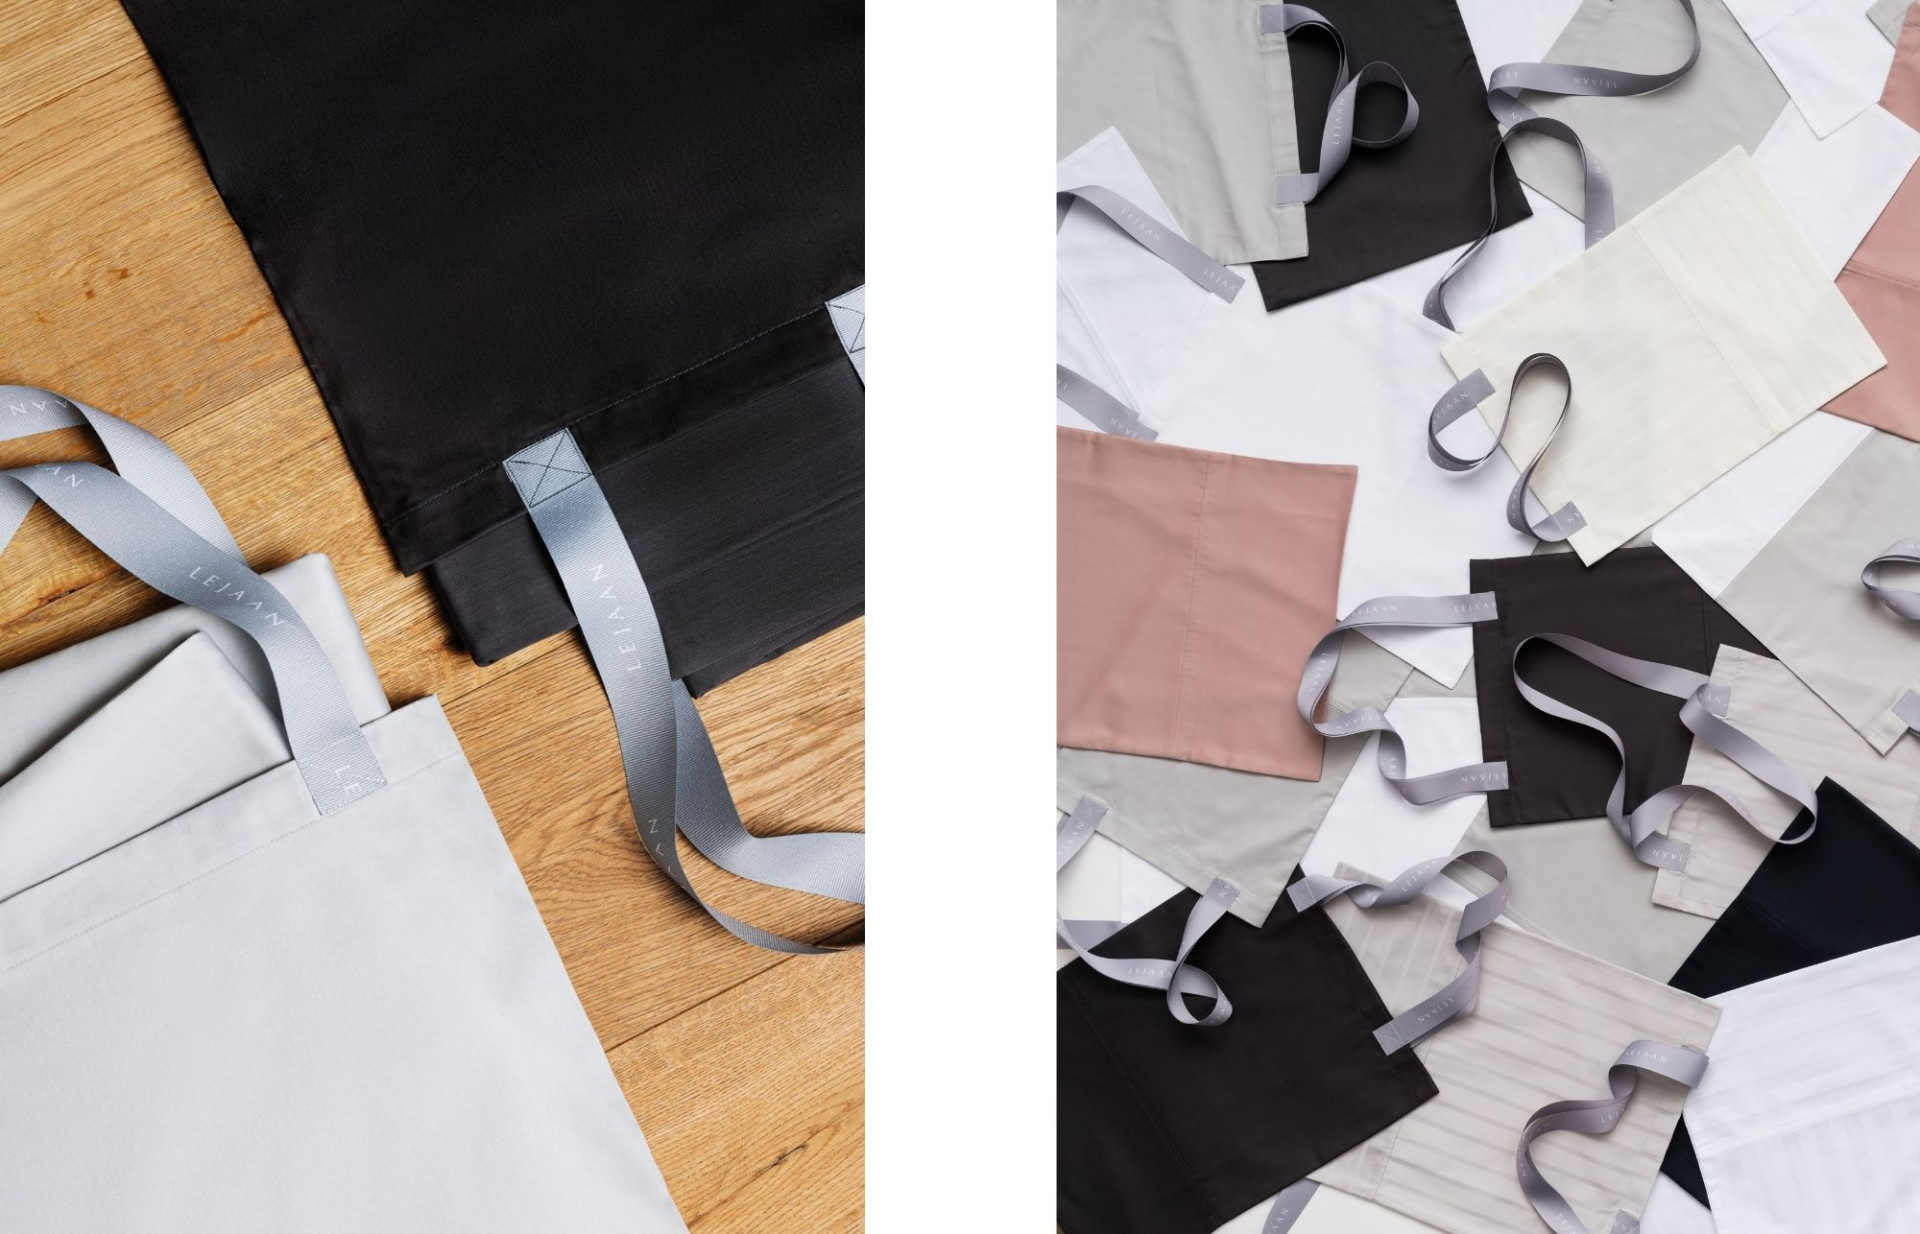 Tašku s širším popruhem na pohodlné nošení využijete na drobnosti, peněženku, knížky nebo jako „dustbag“ pro ukládání vypraného povlečení.